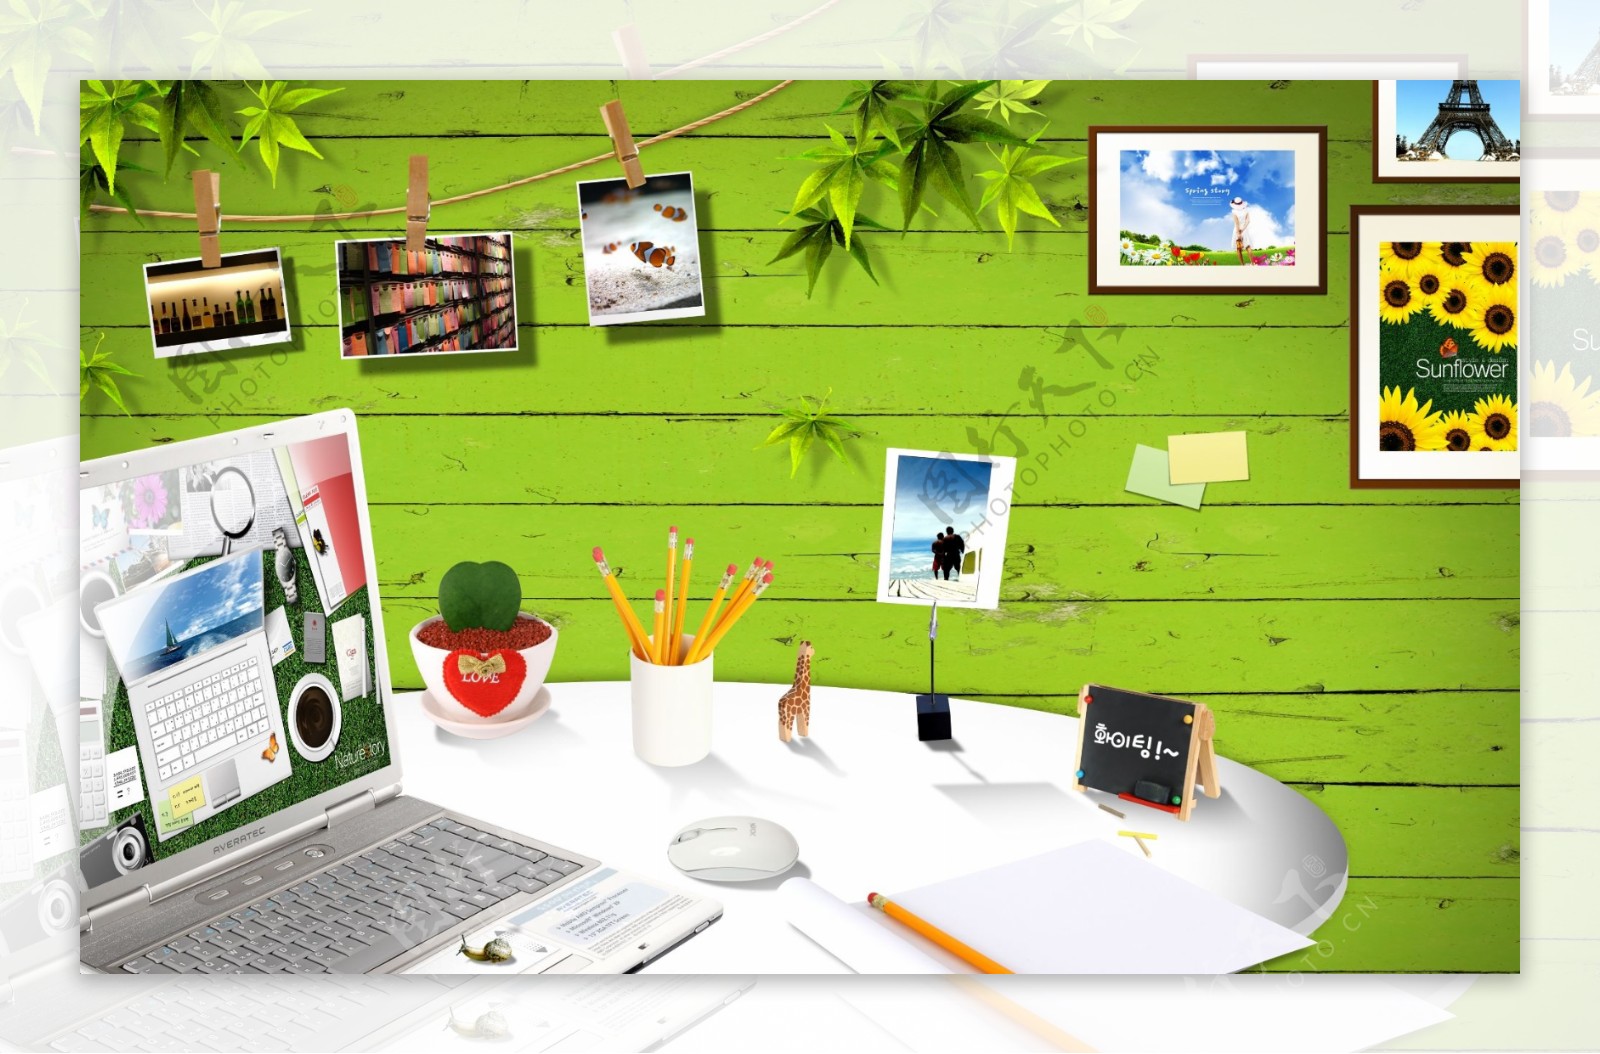 电脑树叶绿叶笔筒相框笔记本设计元素照片相片日韩盛典